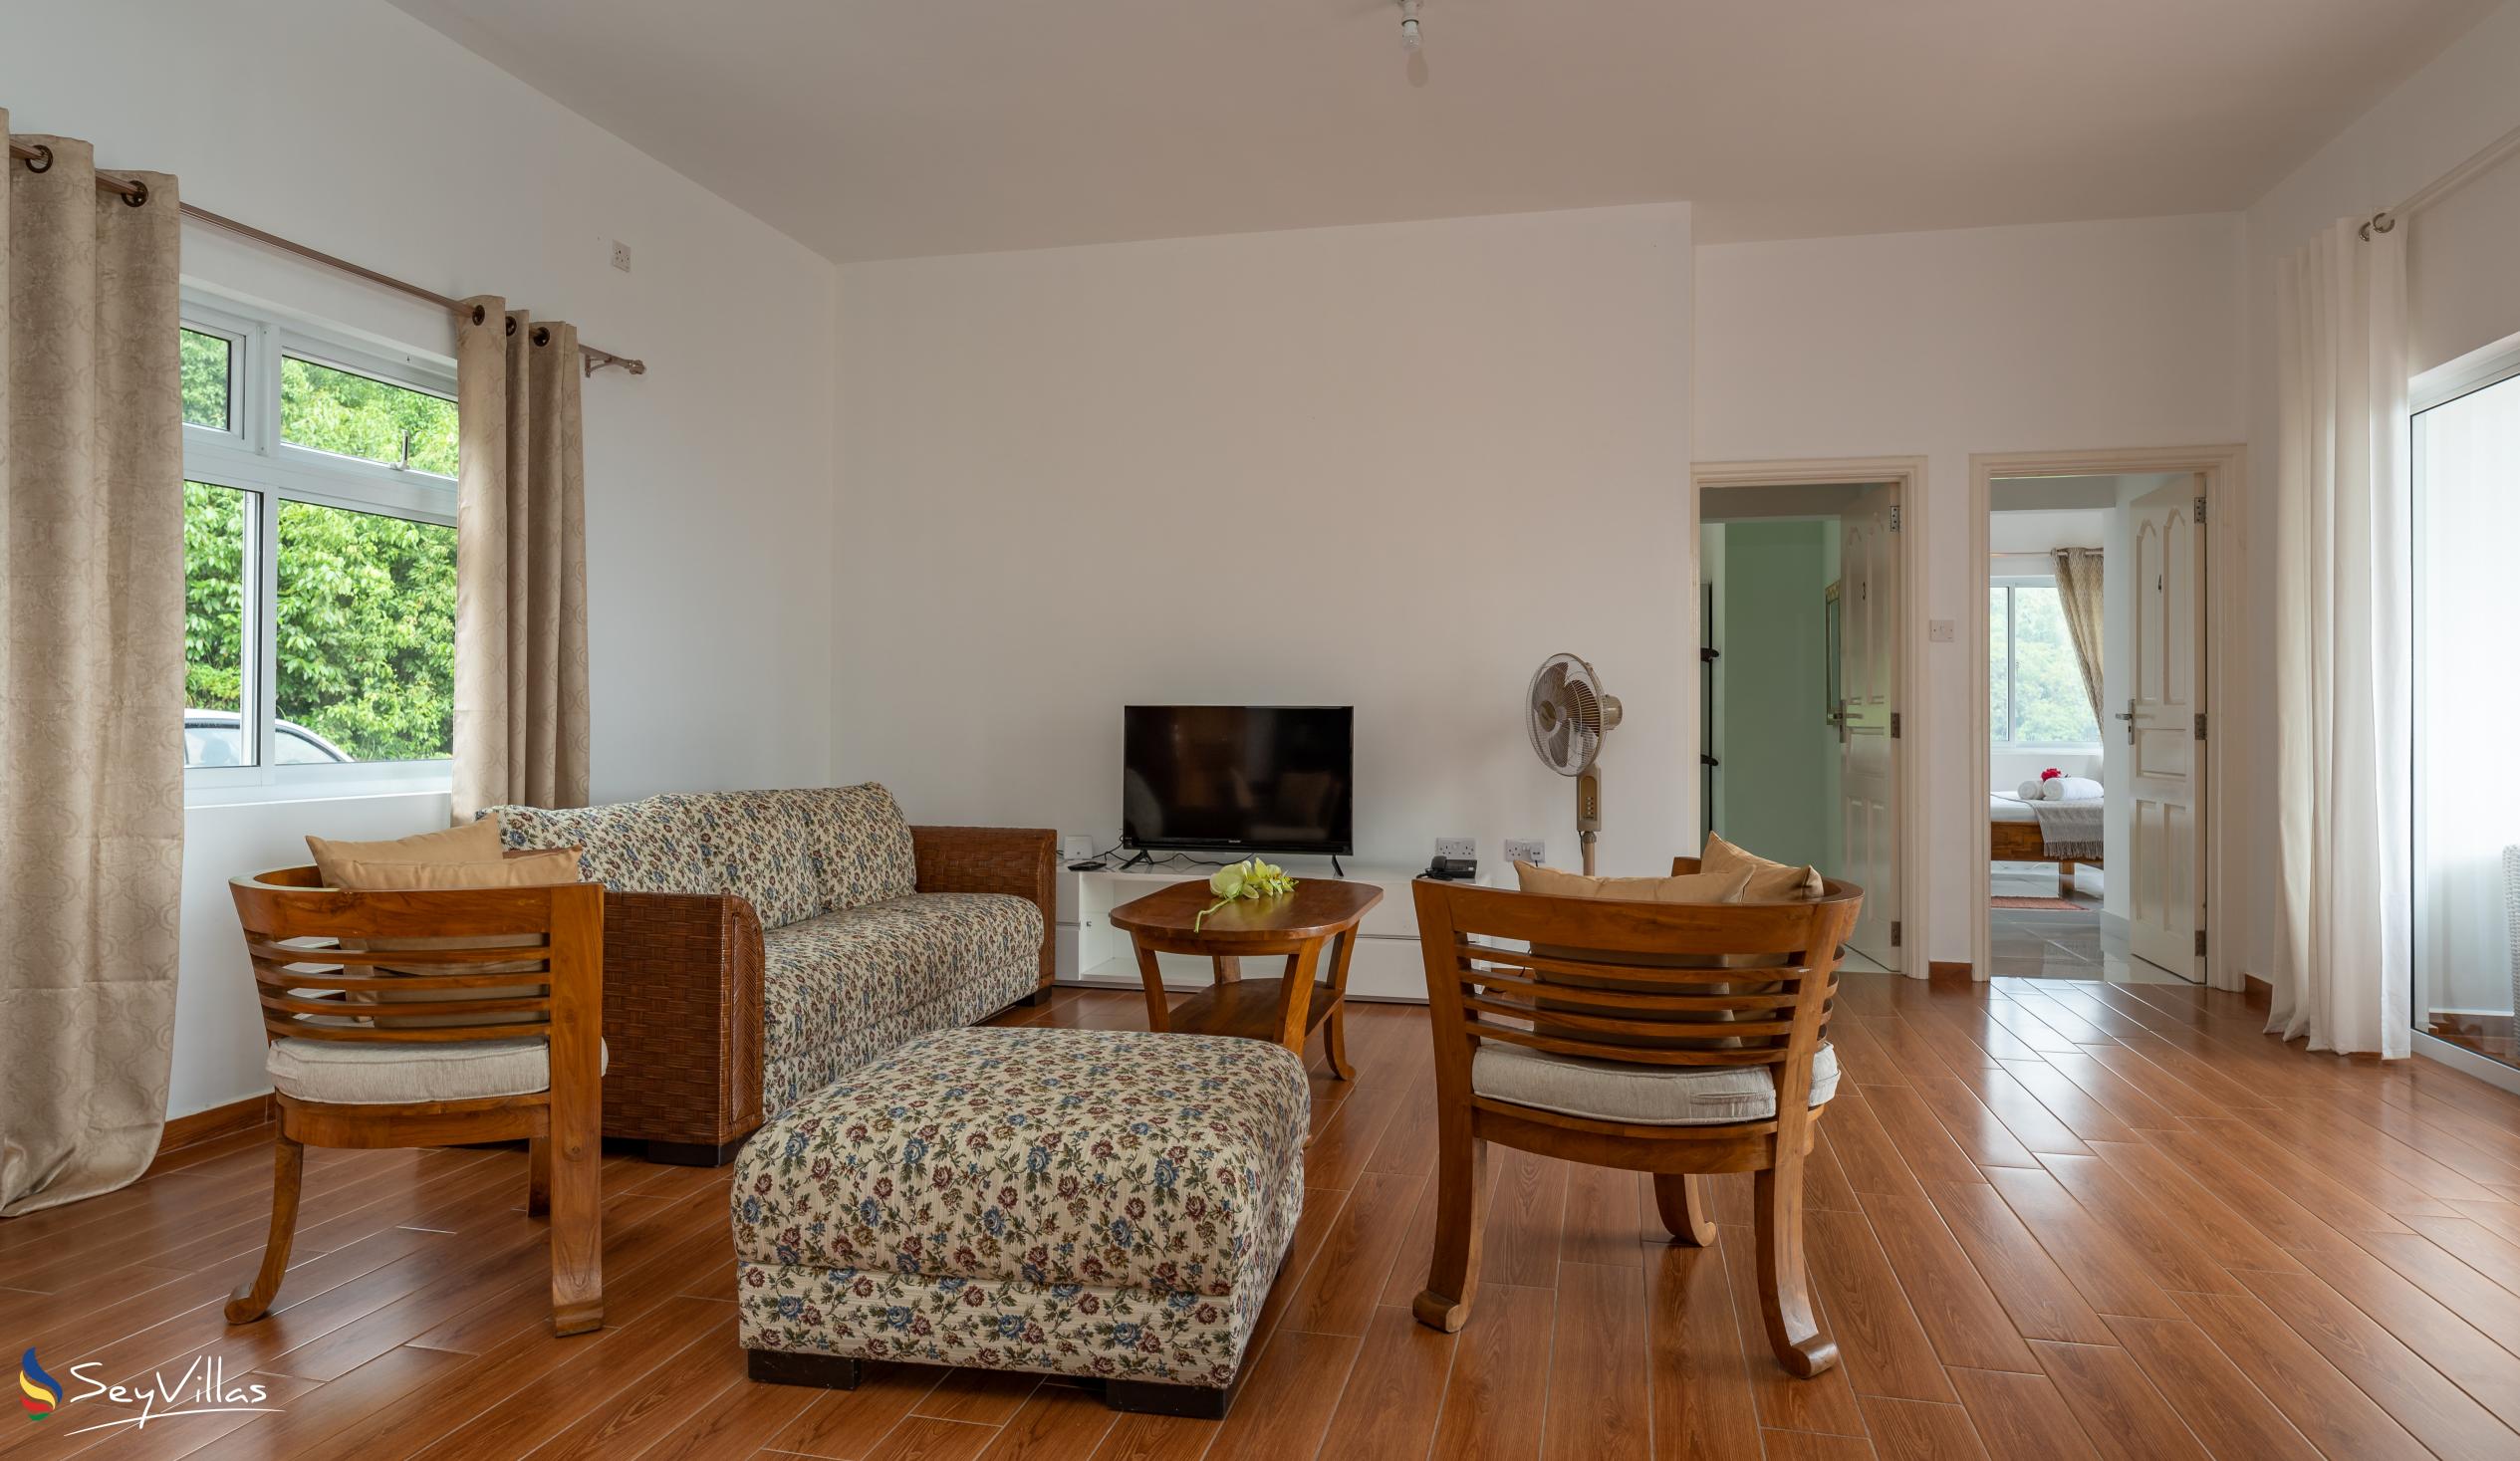 Foto 44: Cella Villa - Appartamento con 2 camere - Mahé (Seychelles)